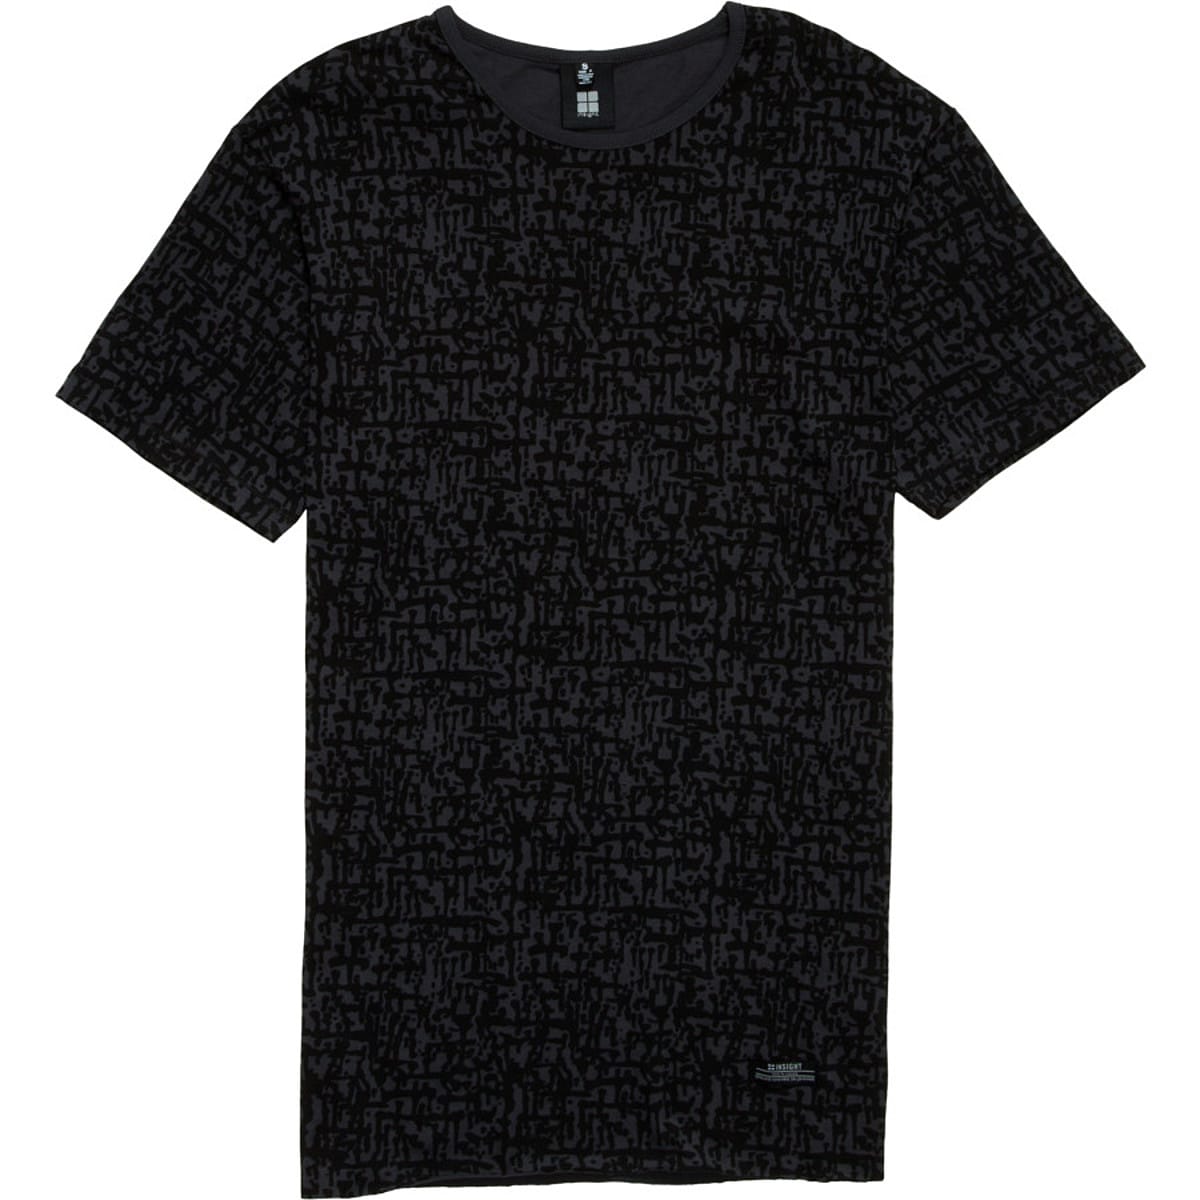 Insight Crossmaker T-Shirt - Short-Sleeve - Men's - Clothing